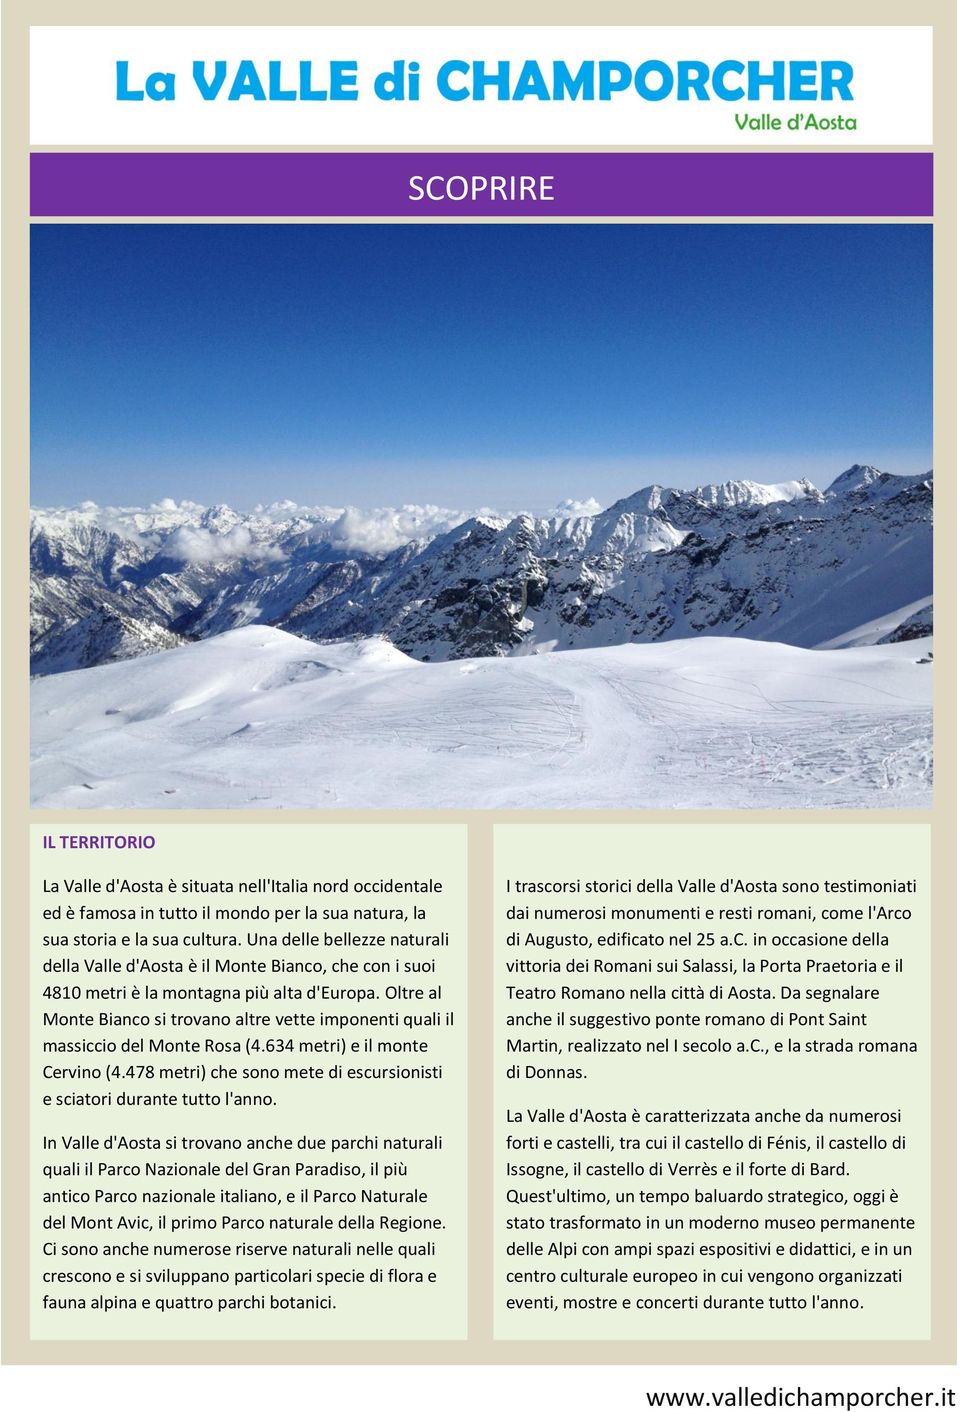 Oltre al Monte Bianco si trovano altre vette imponenti quali il massiccio del Monte Rosa (4.634 metri) e il monte Cervino (4.478 metri) che sono mete di escursionisti e sciatori durante tutto l'anno.